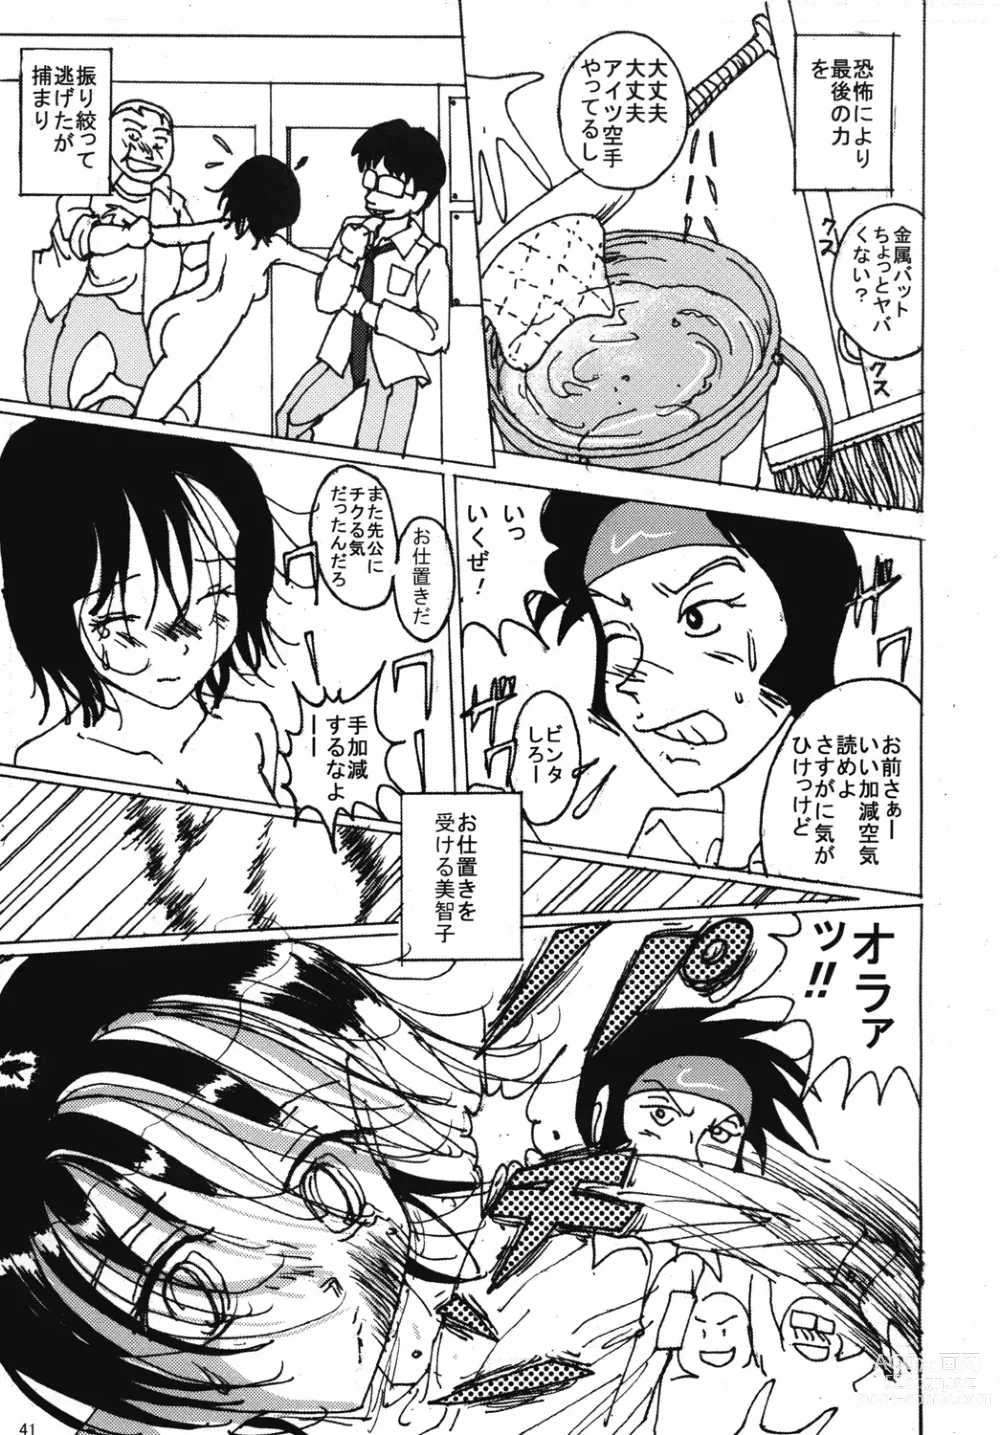 Page 40 of doujinshi Mune Ippai no Dizzy